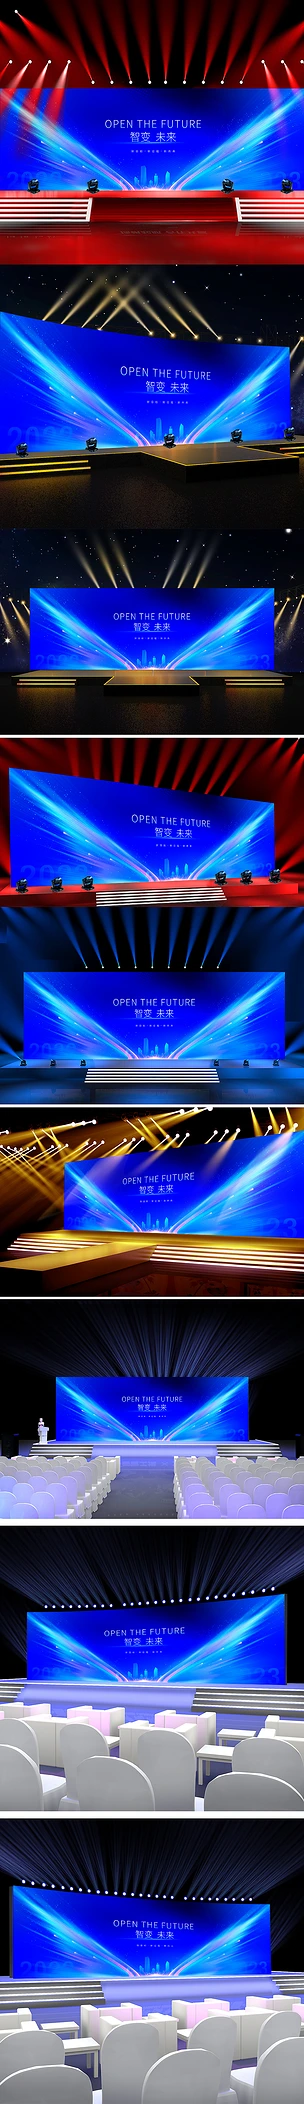 蓝色炫酷科技感发布会企业年会晚会舞台背景板